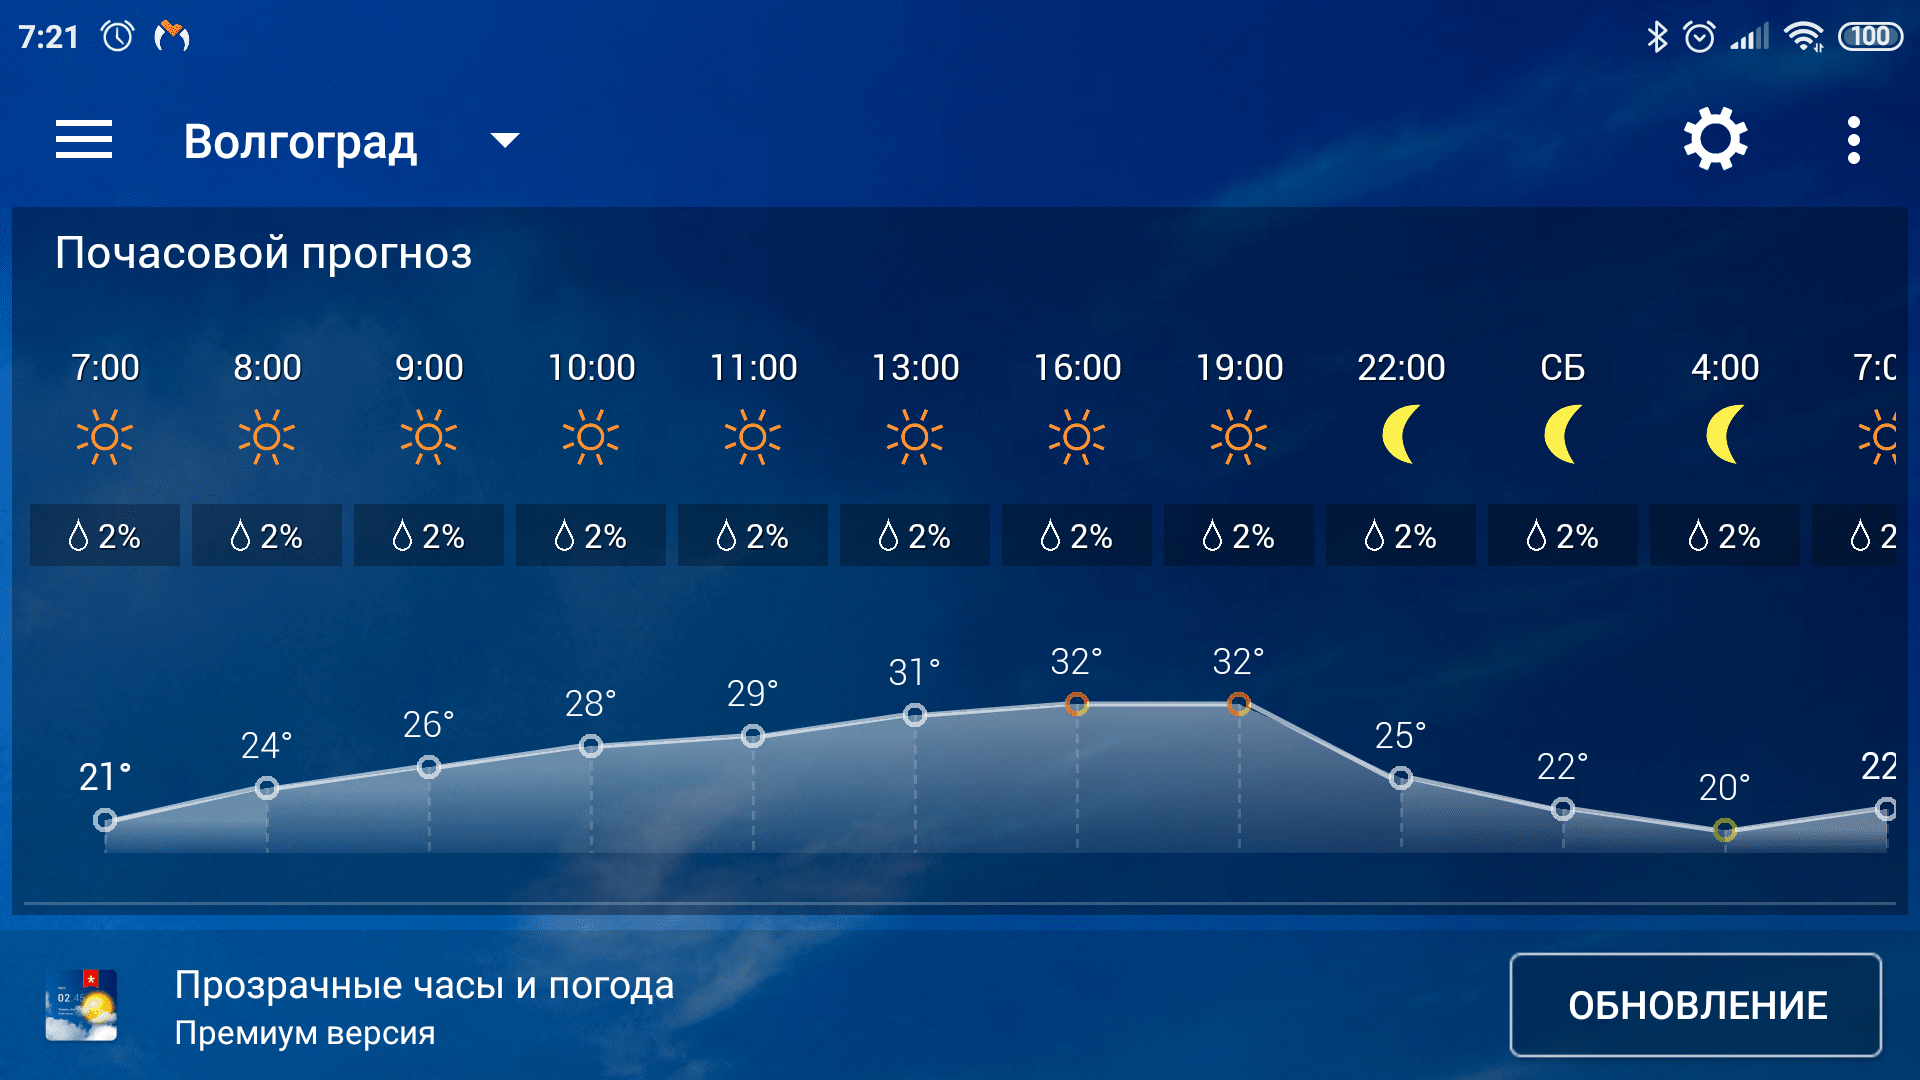 Прогноз на сегодня по часам владивосток. Погода. Погода в Волгограде. Прогноз погоды в Волгограде. Погода в Волгограде на завтра.